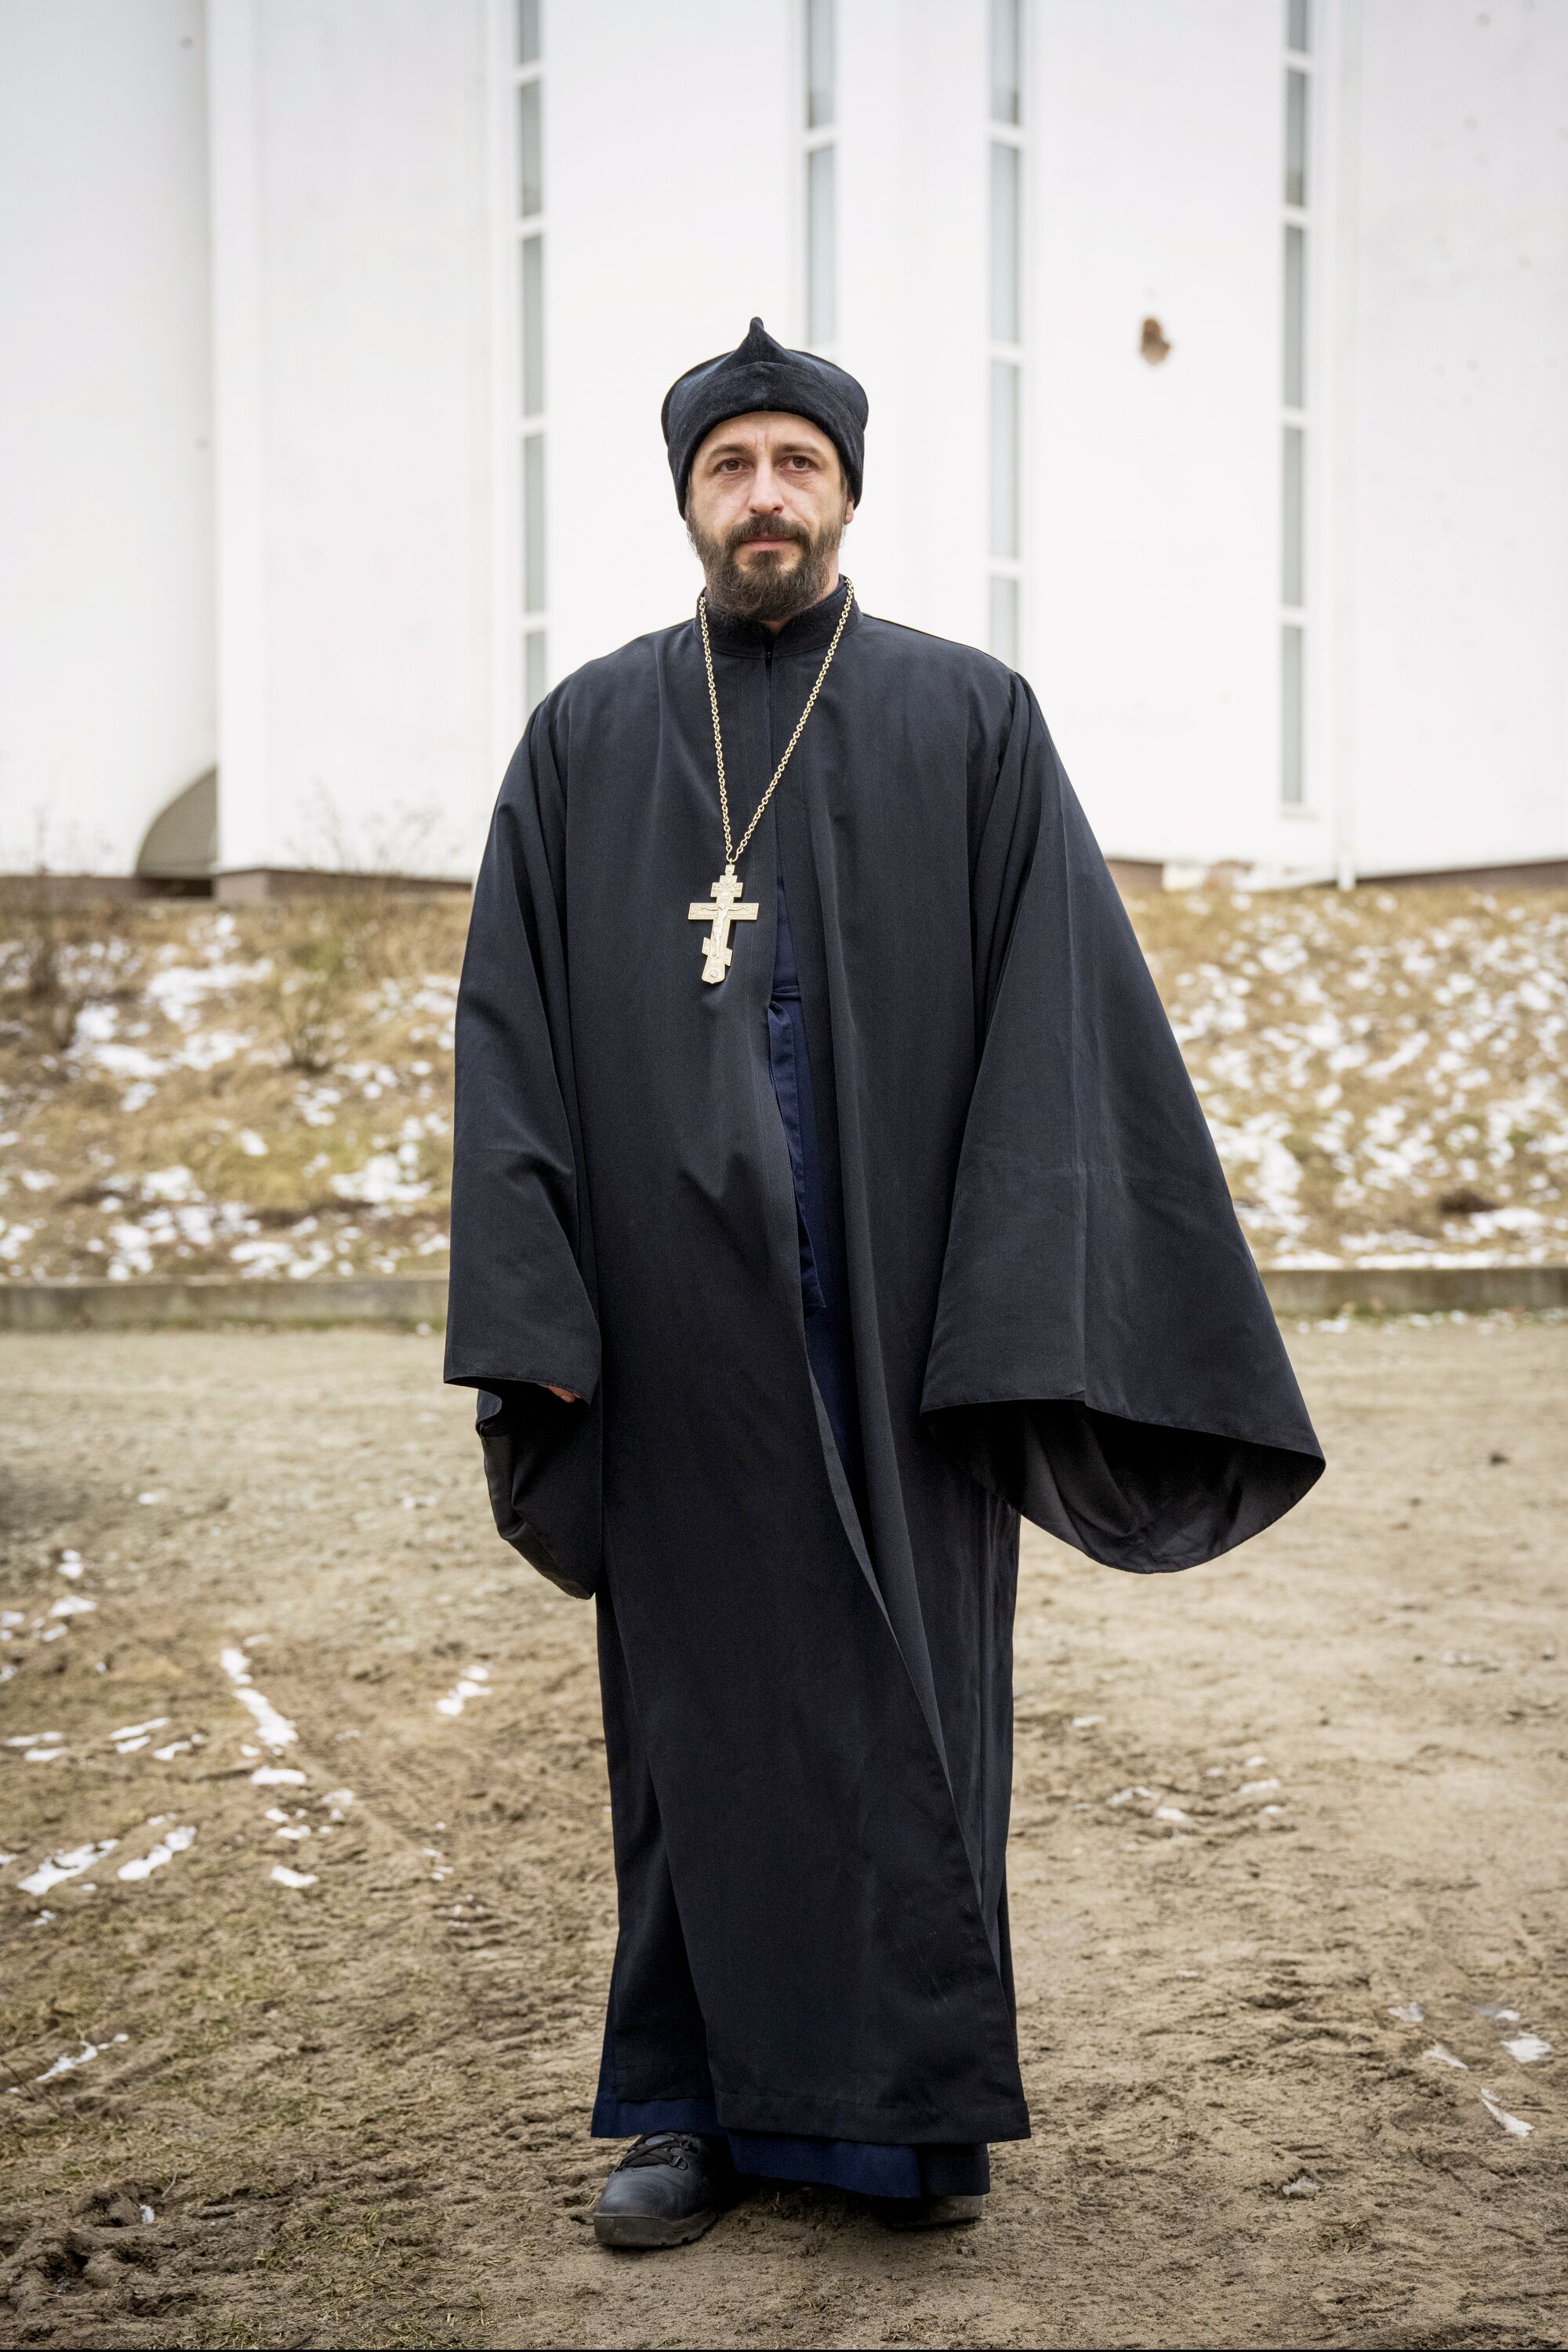 Siyah cüppeli, siyah şapkalı ve zincire asılı büyük bir haç takan bir rahip portre için poz veriyor.